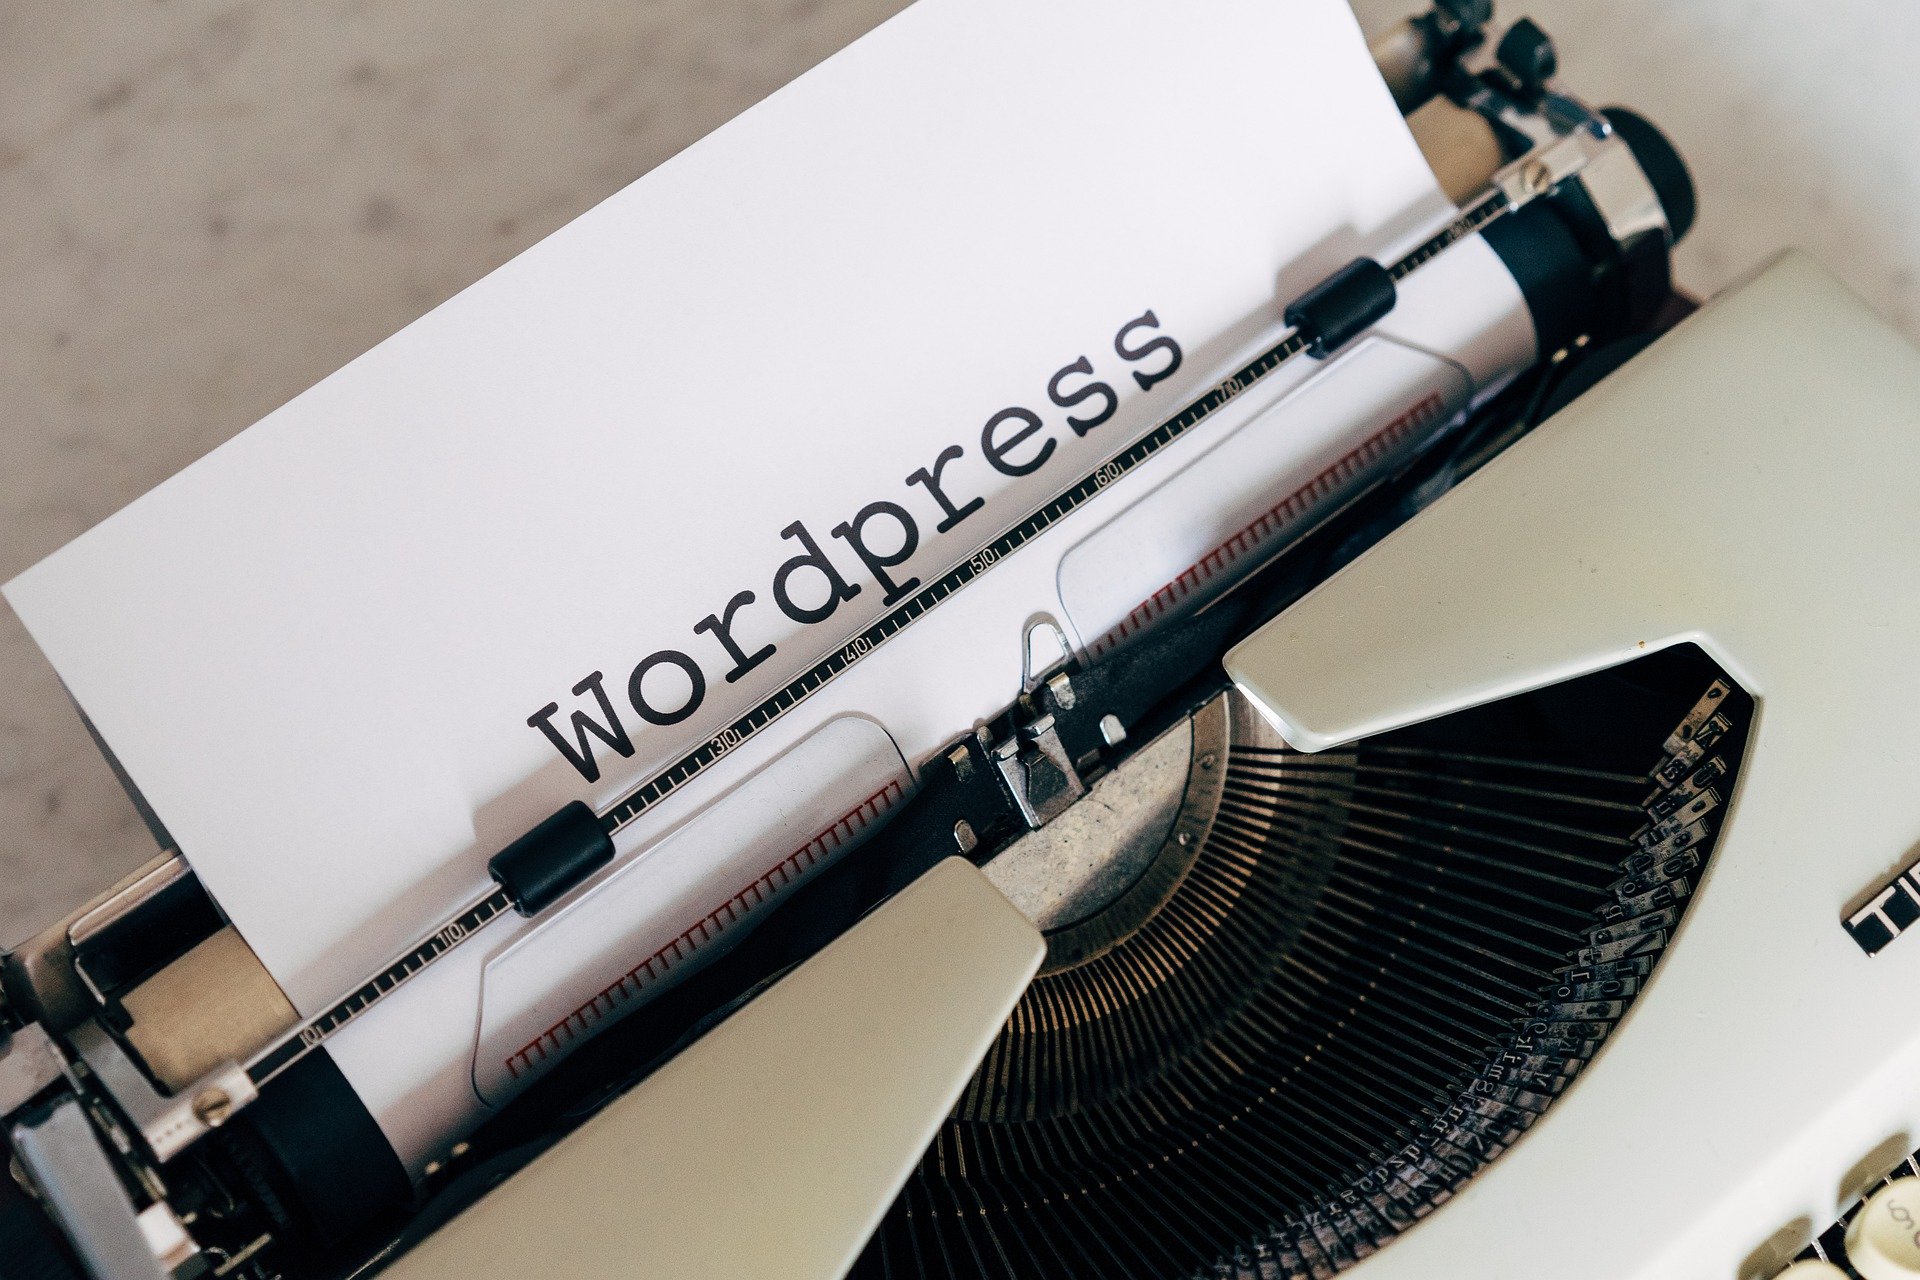 wordpress on a typewriter